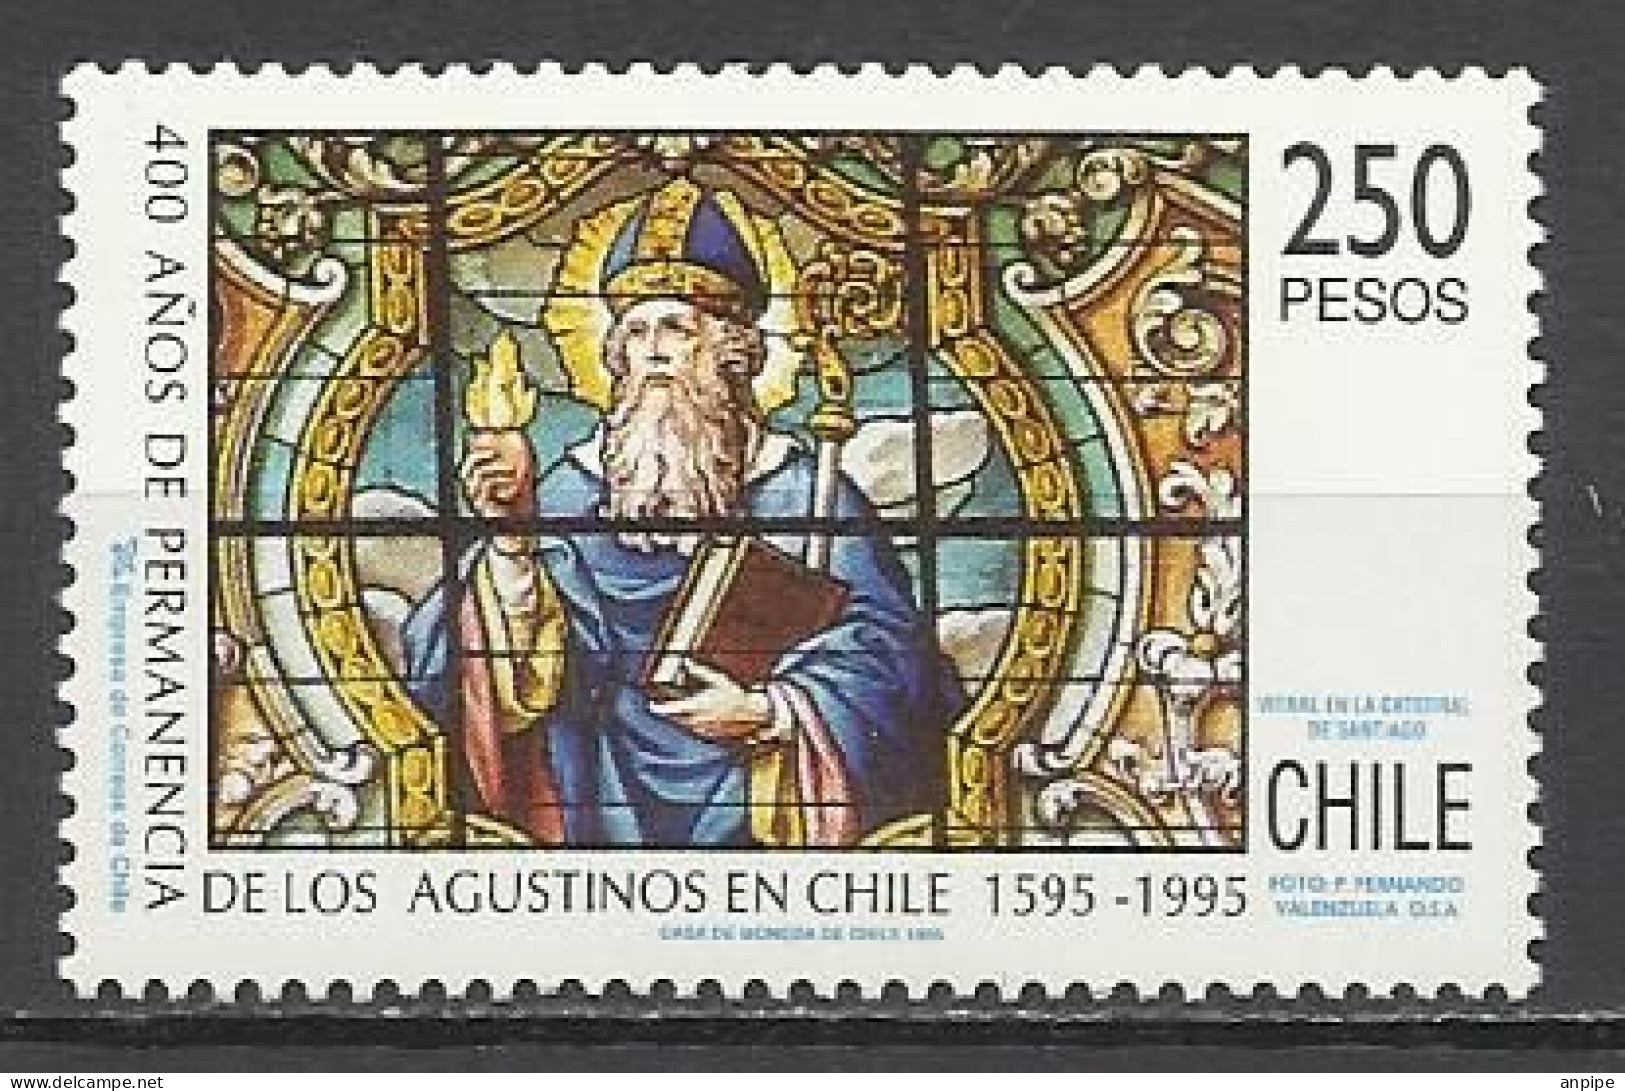 CHILE, 1995 - Chile